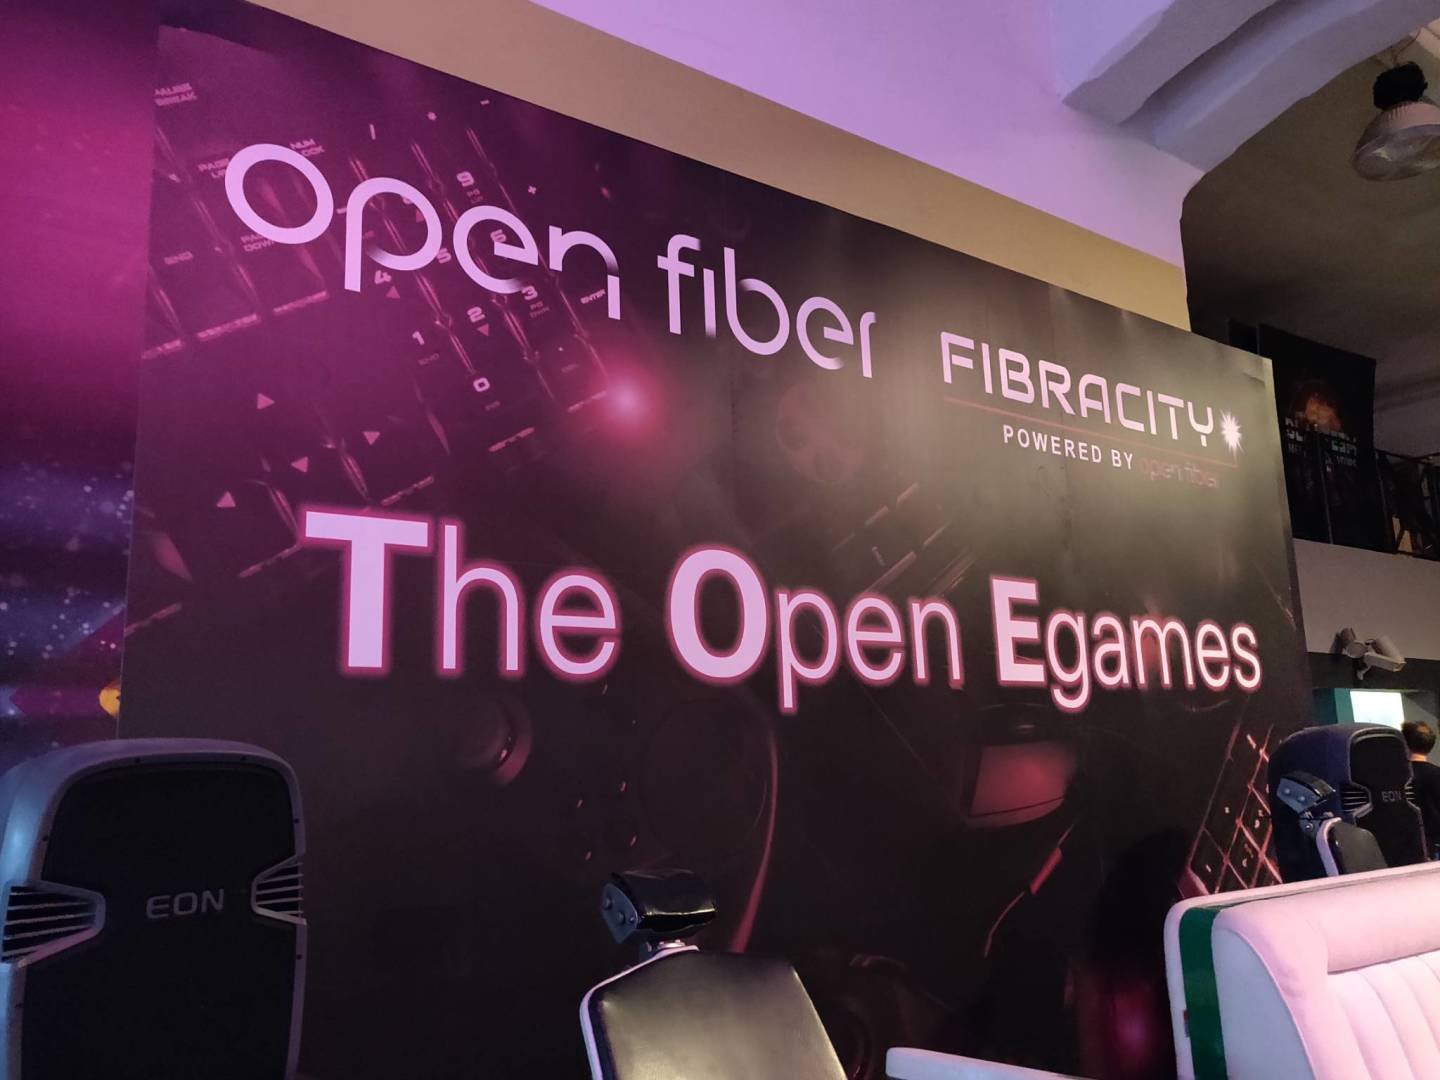 Immagine di The Open eGames, siamo stati all'evento FIFA promosso da Open Fiber e Fibra.City